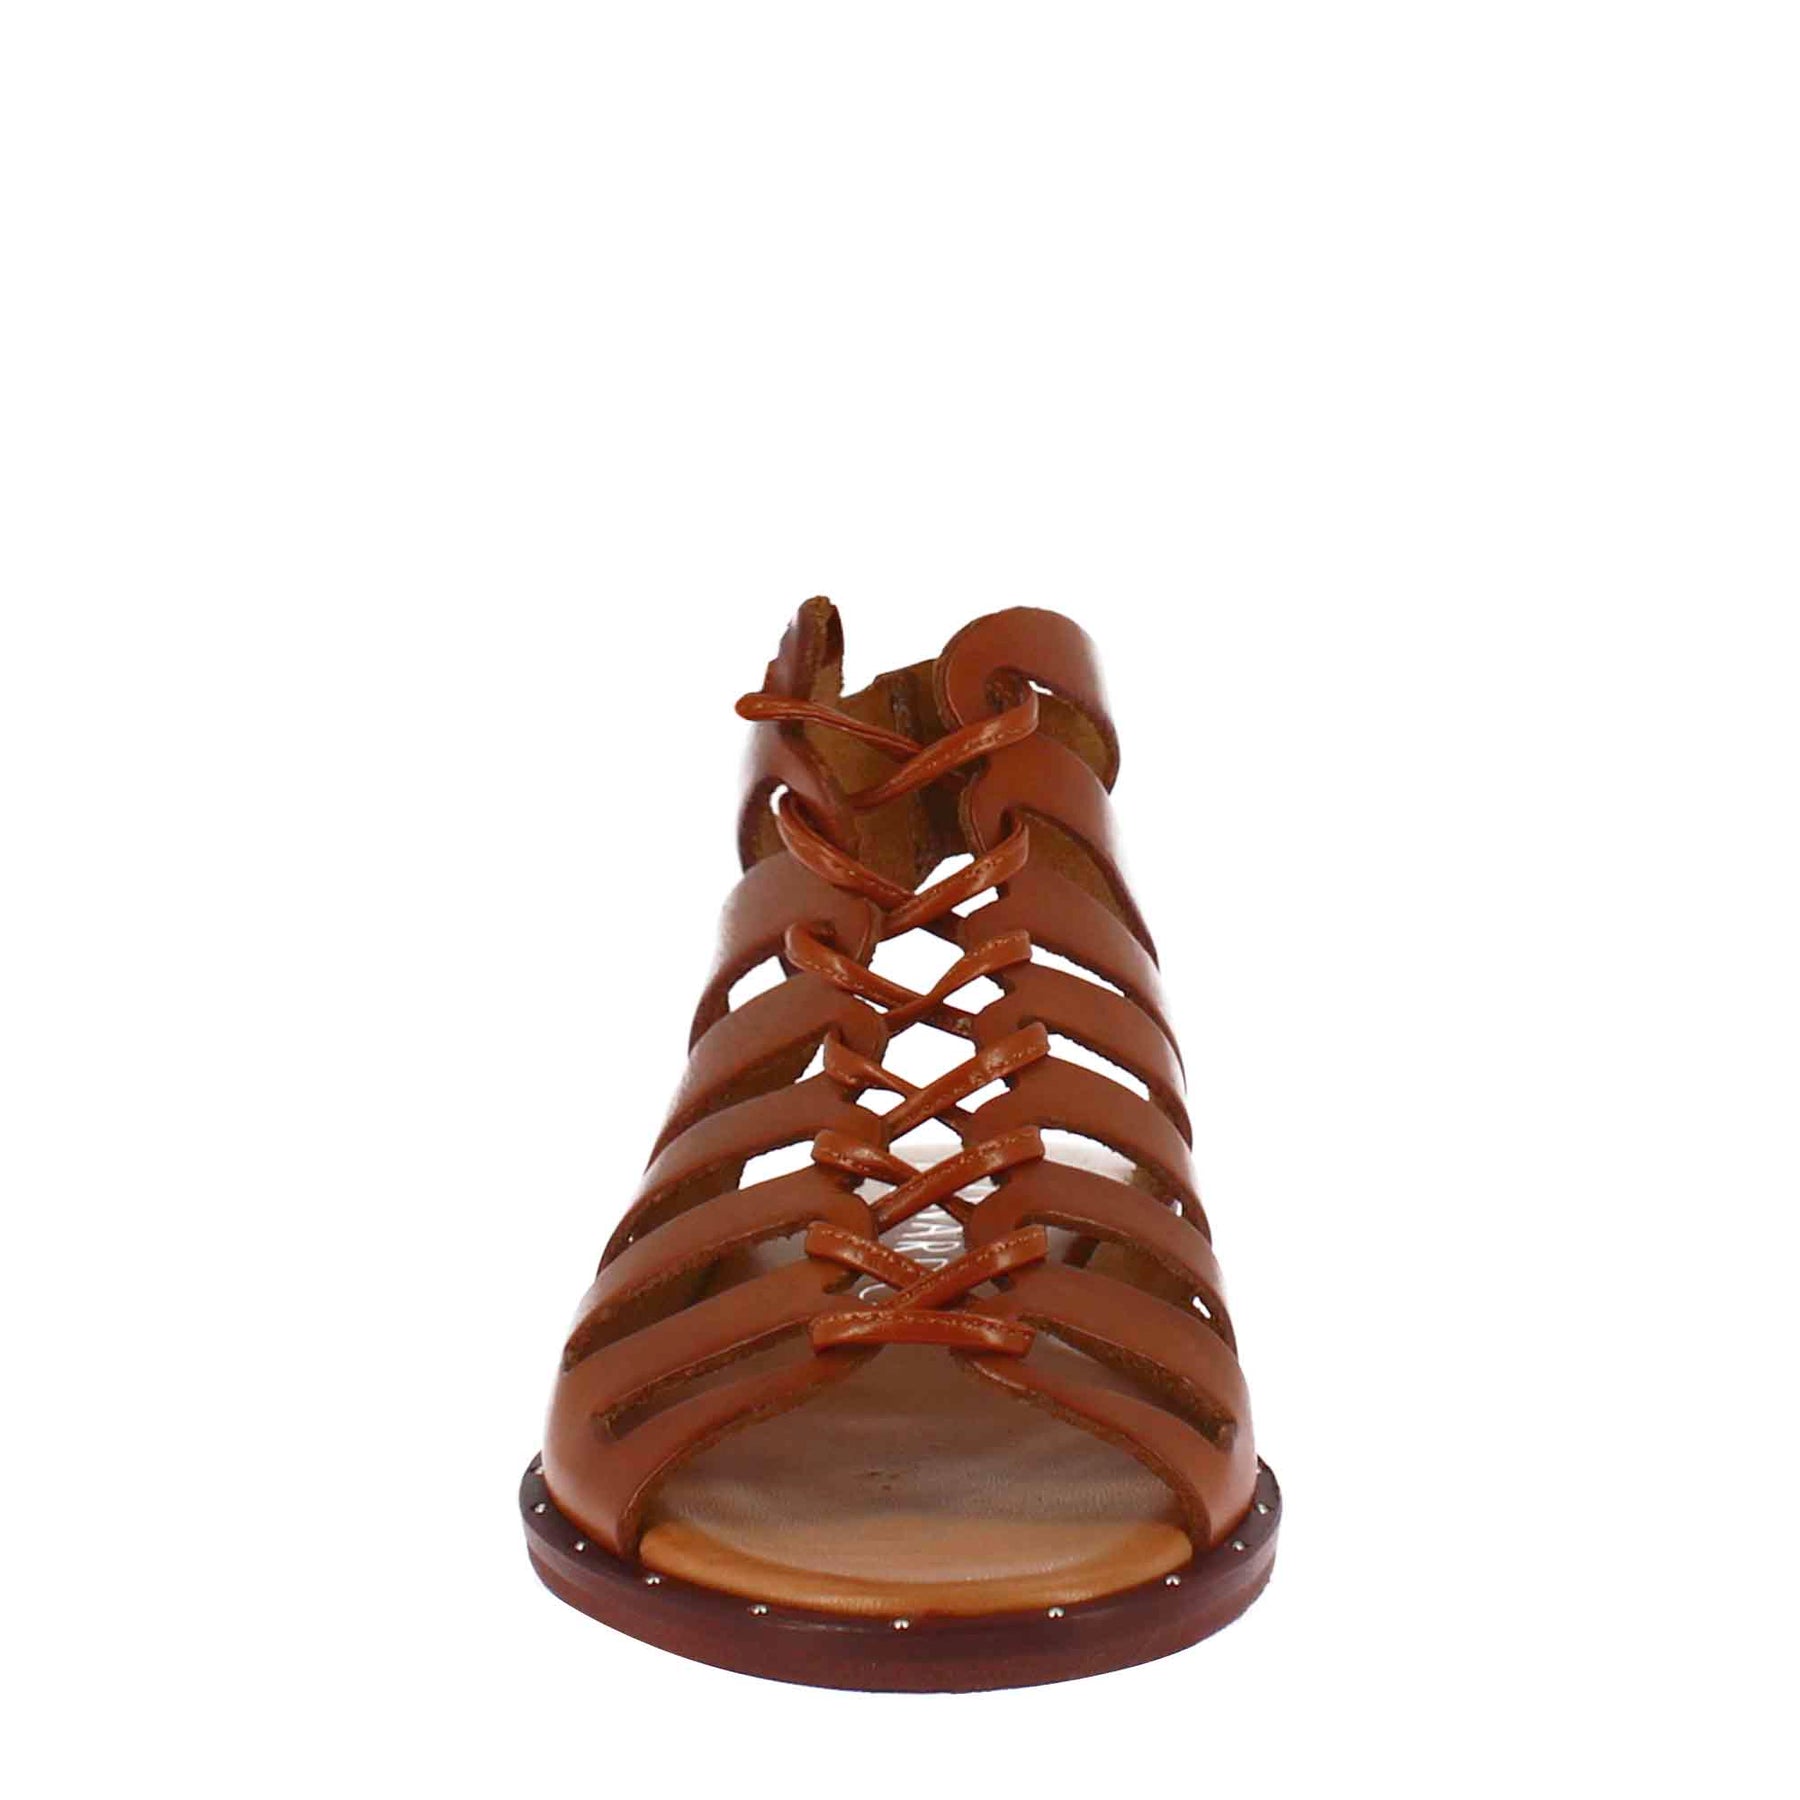 Handgefertigte braune Leder-Gladiator-Sandale für Frauen mit Schnürsenkeln